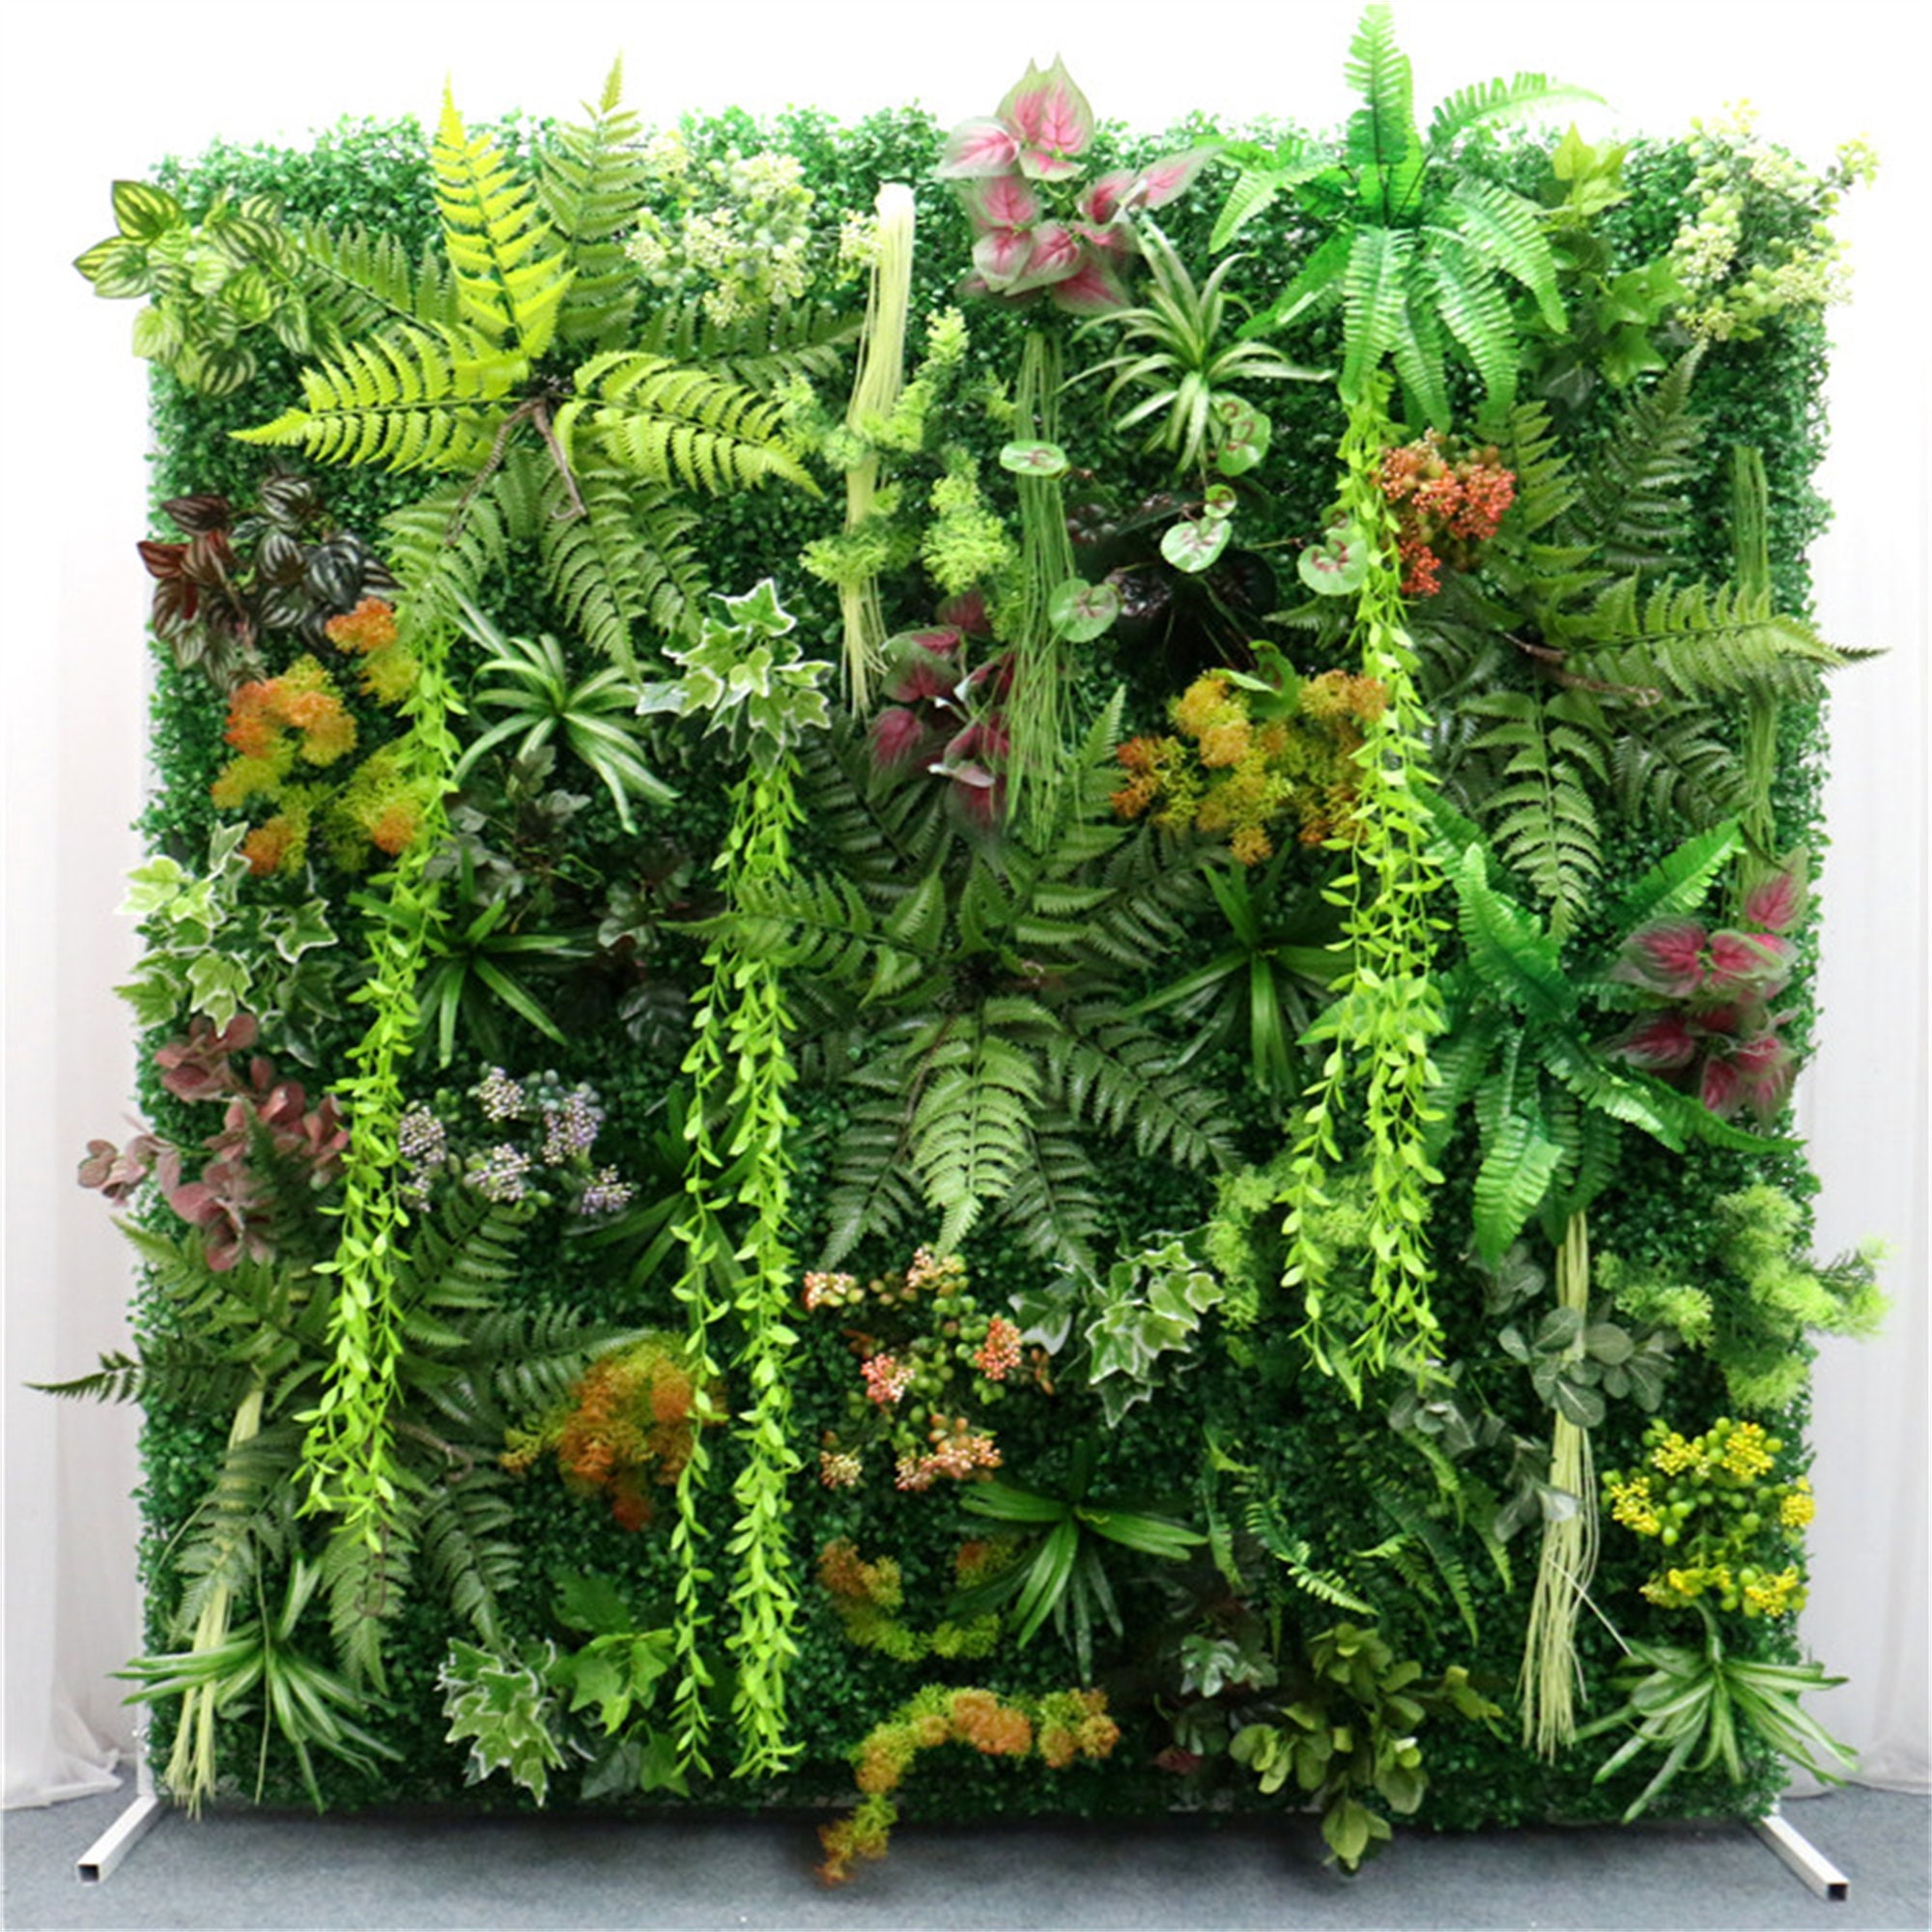 Green Living Wall Assorted Foliage Mat, Artificial Rainforest Panel